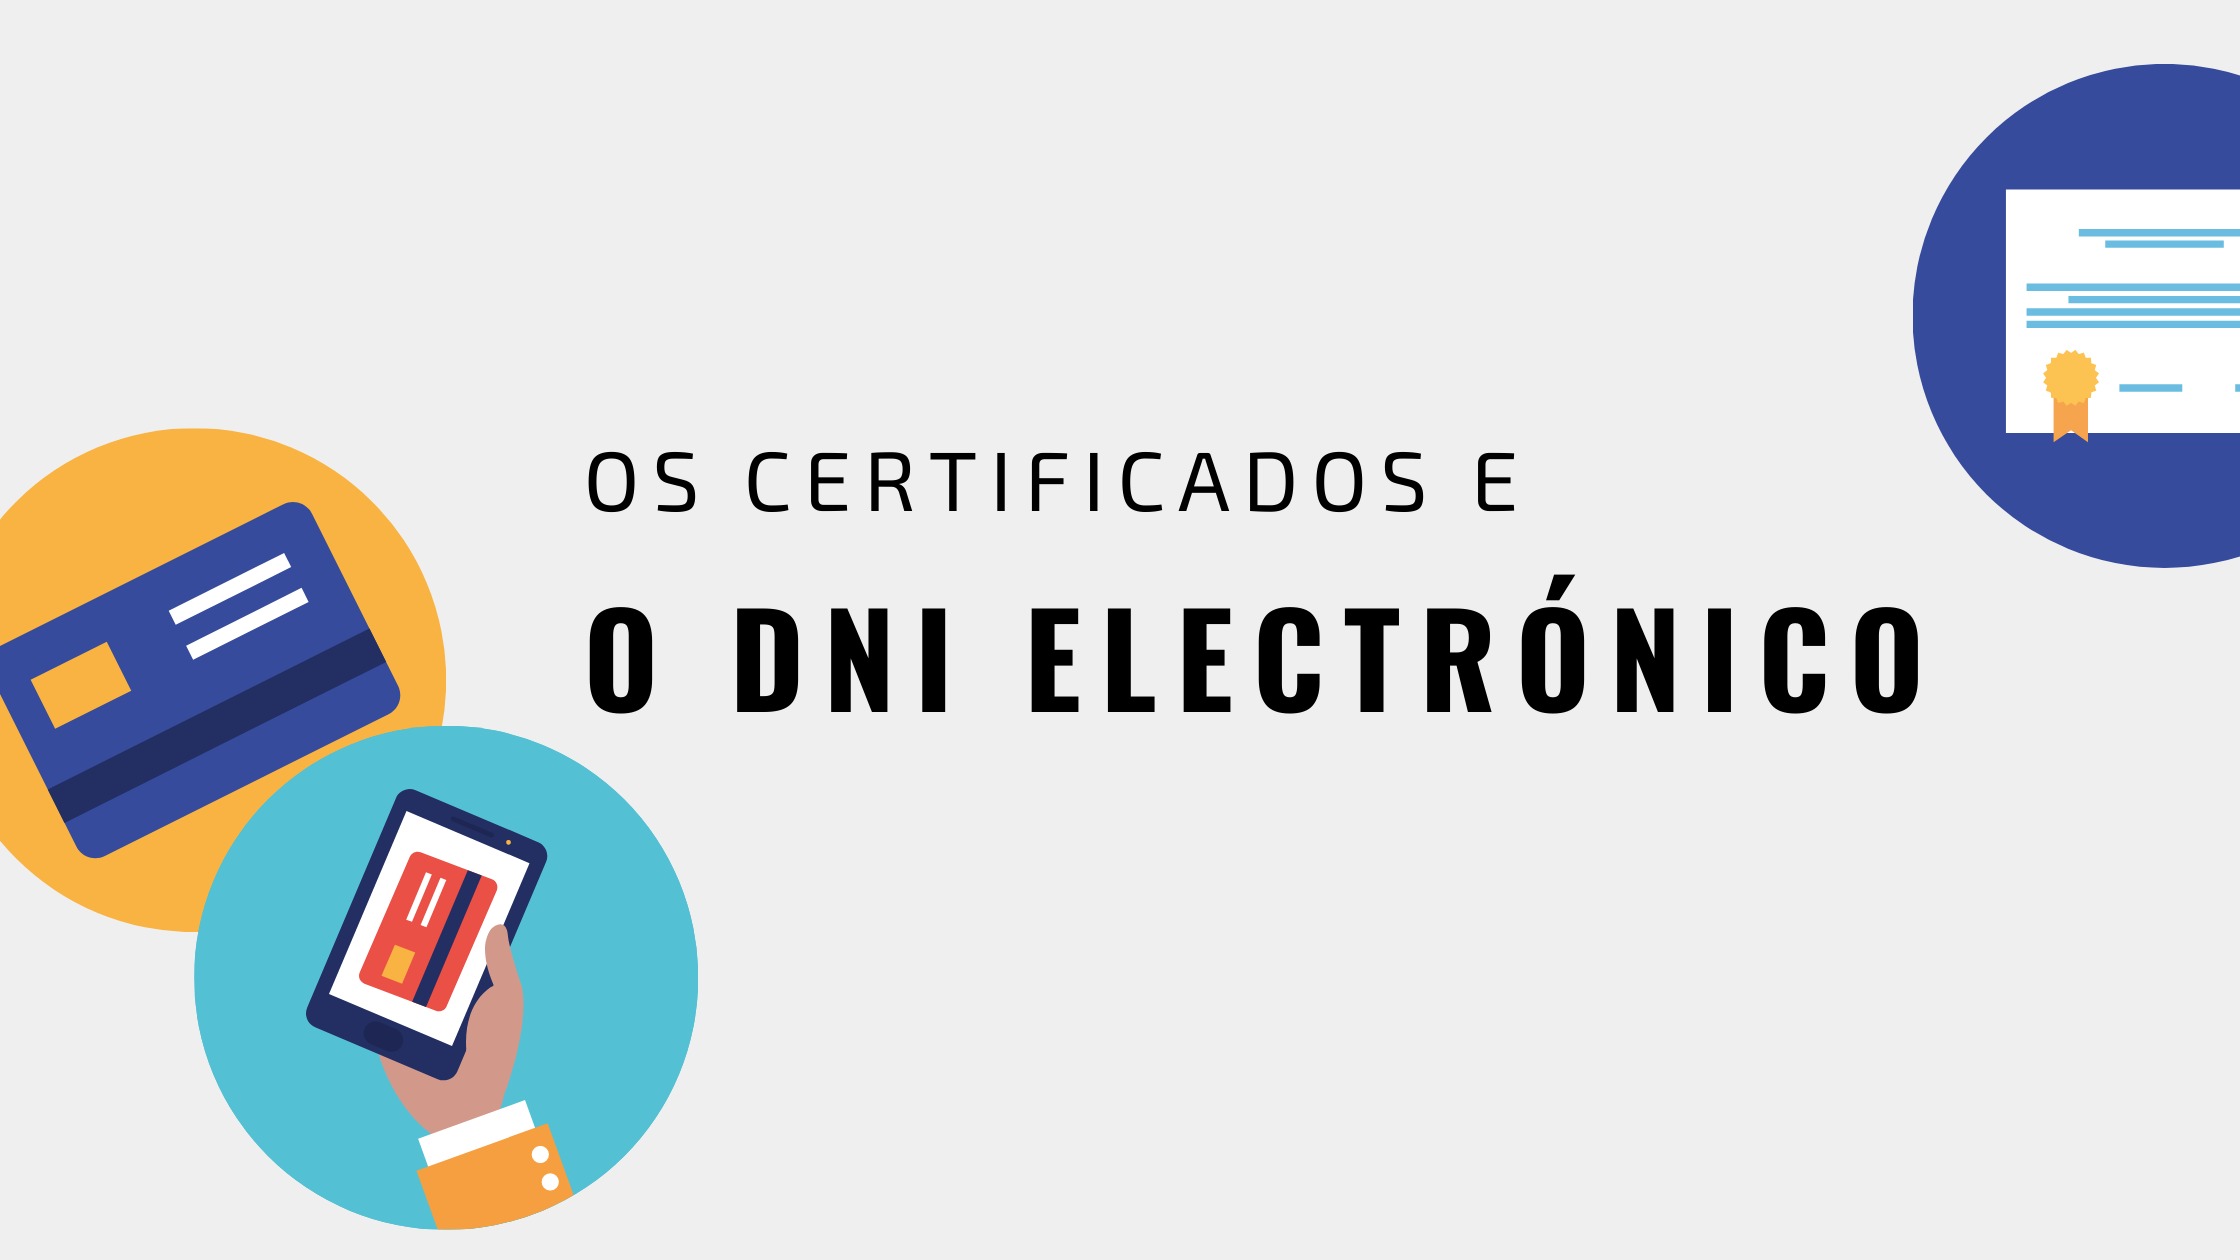 Os certificados e o DNI electrónico